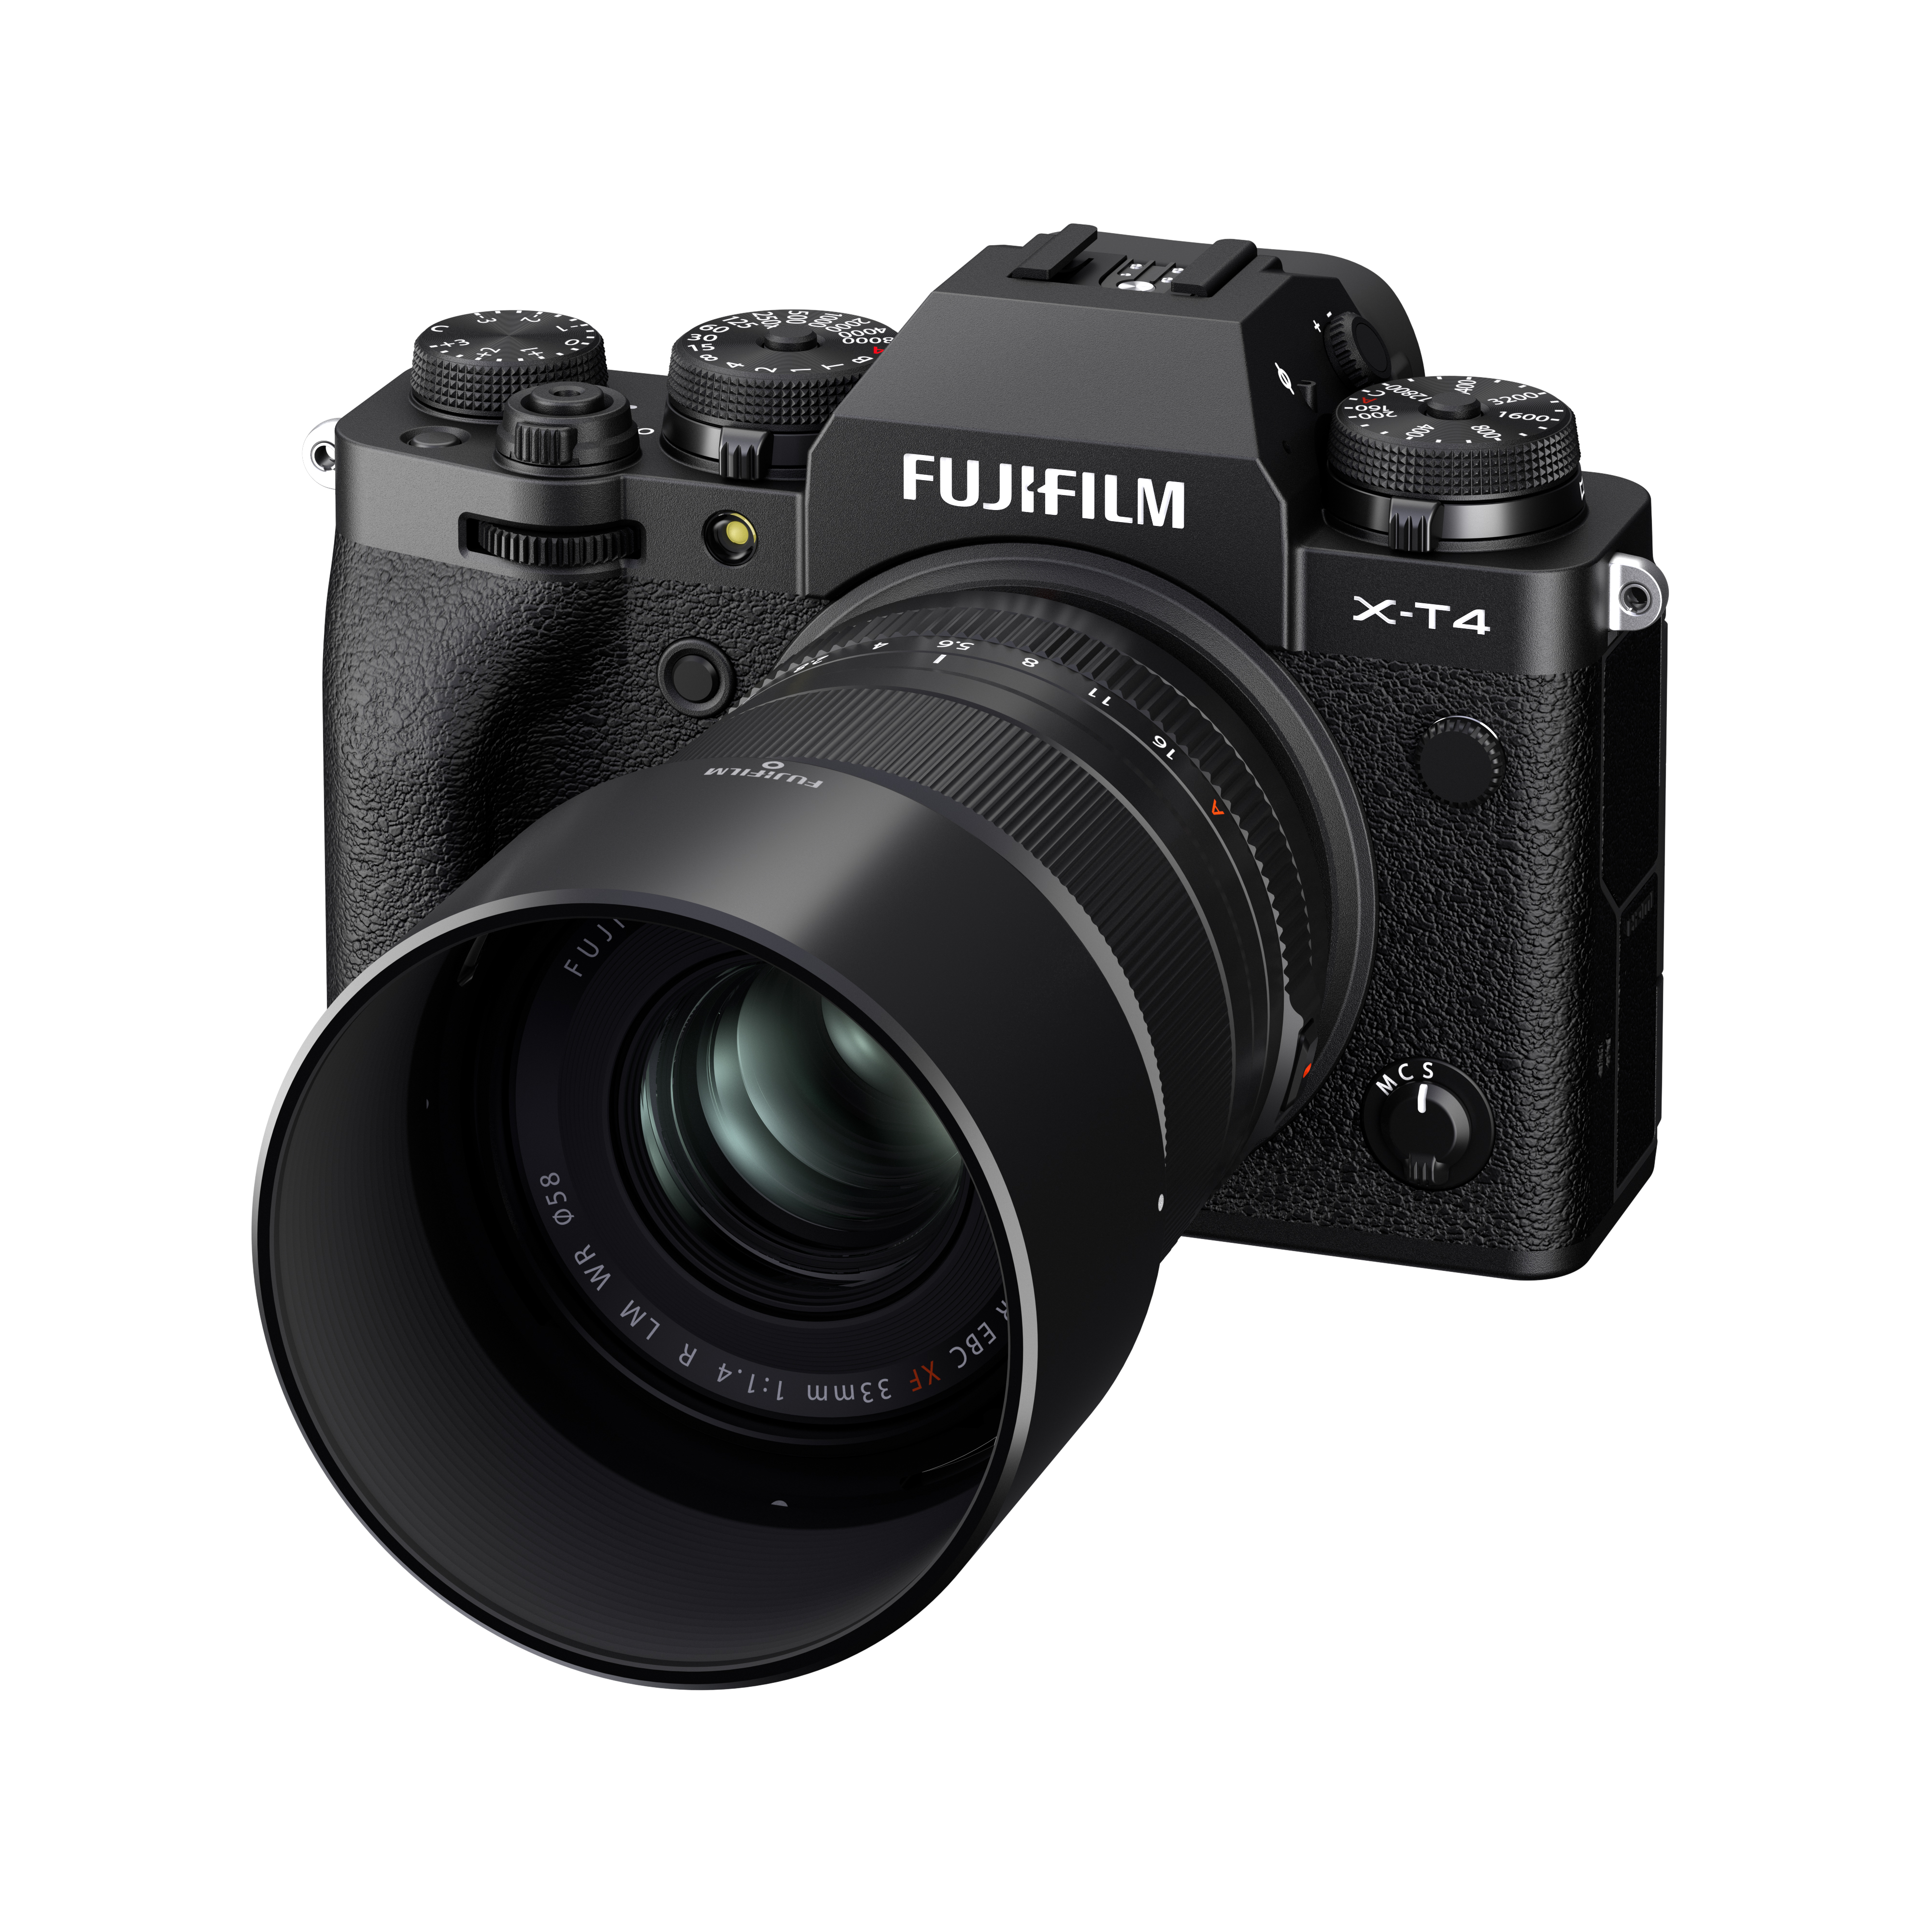 Fujinon XF 33mm f/1.4